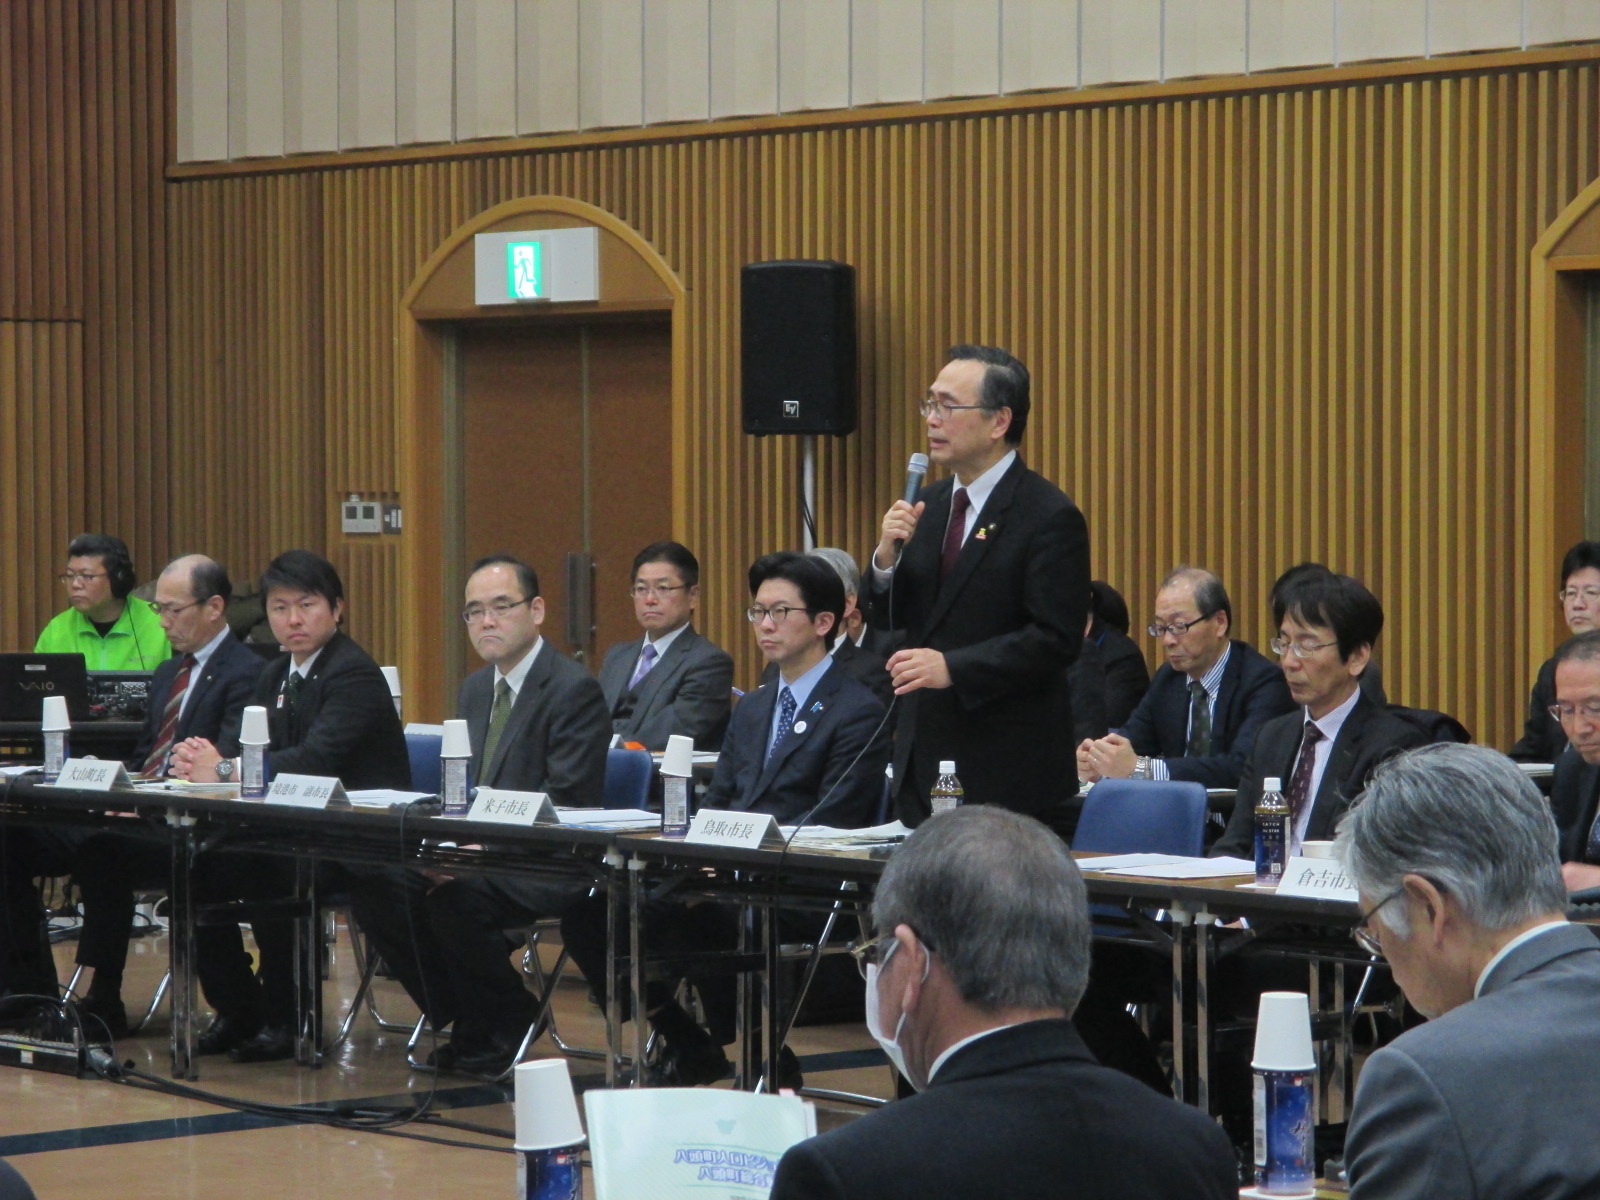 鳥取市長の発言